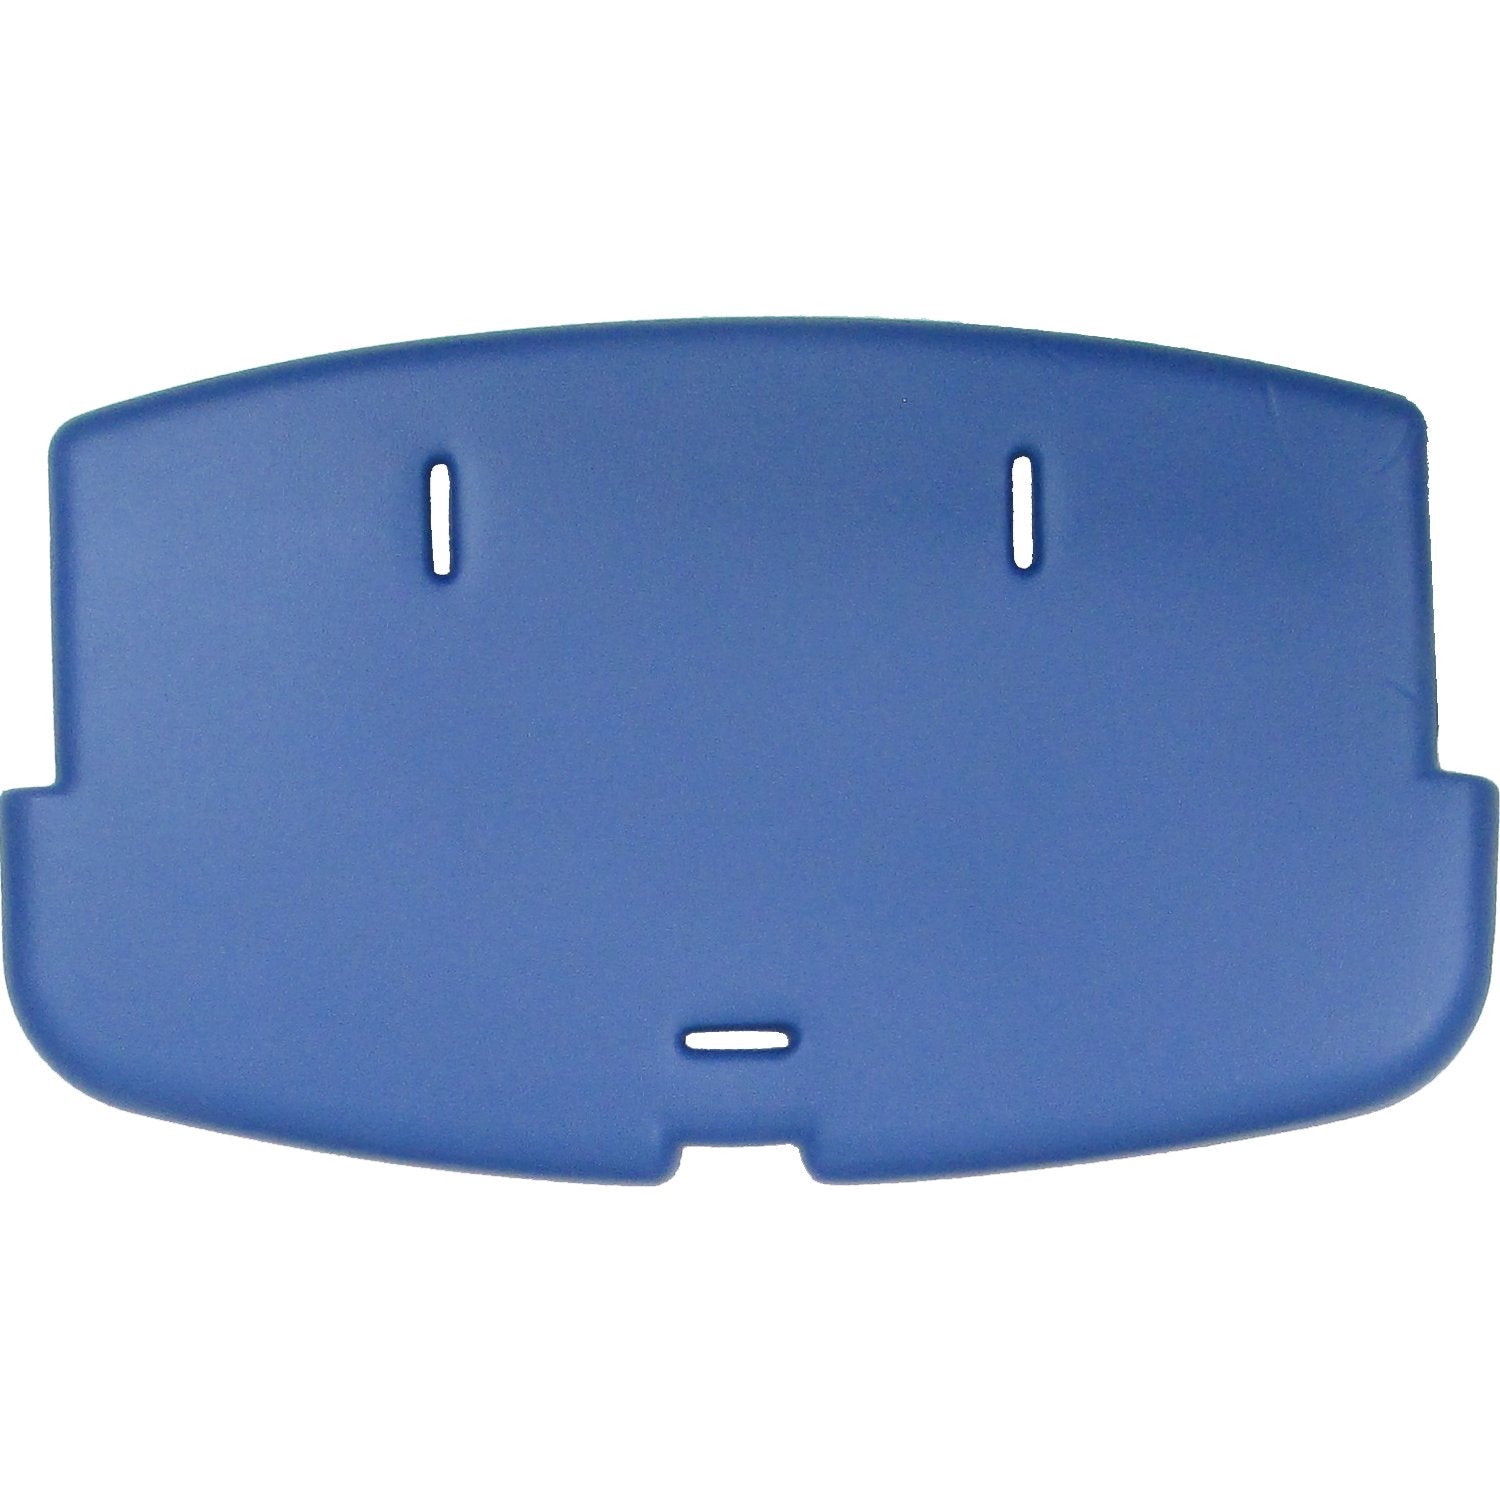 (Part O-BLU)  Cushion Seat- BLUE BERRY- Beyond Junior High Chair